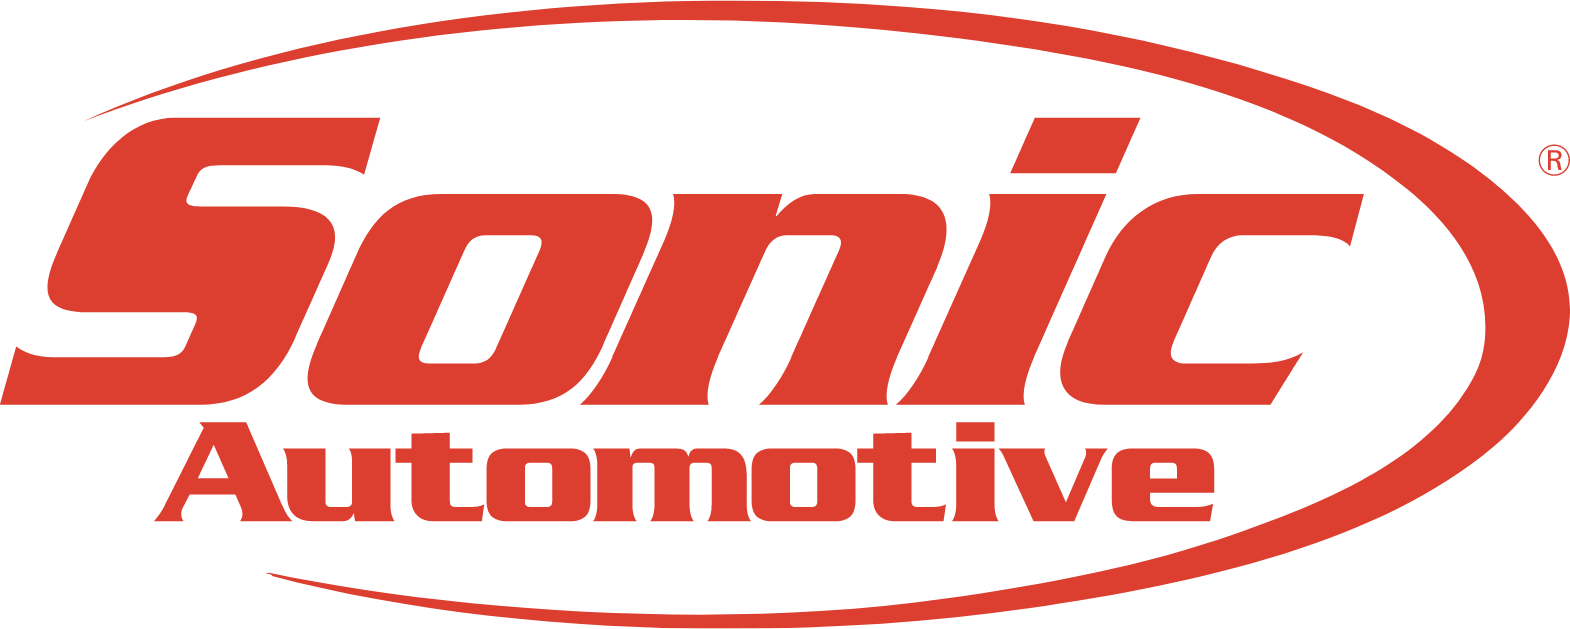 Sonic Automotive
 logo (transparent PNG)